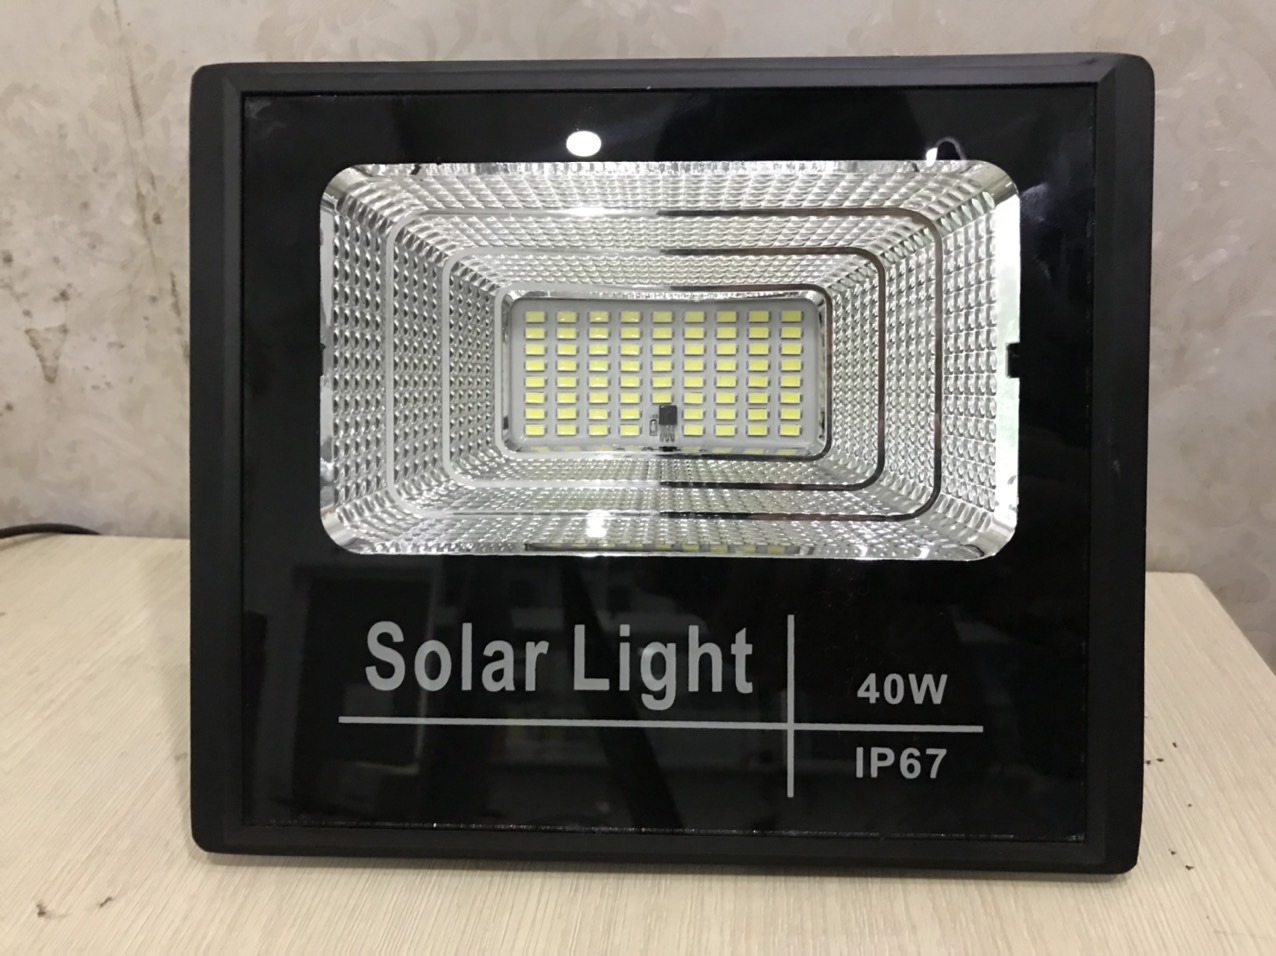 Đèn Năng Lượng Mặt Trời Công Suất 40W - Tiêu chuẩn IP67 Chống Thấm Nước, Có Remote